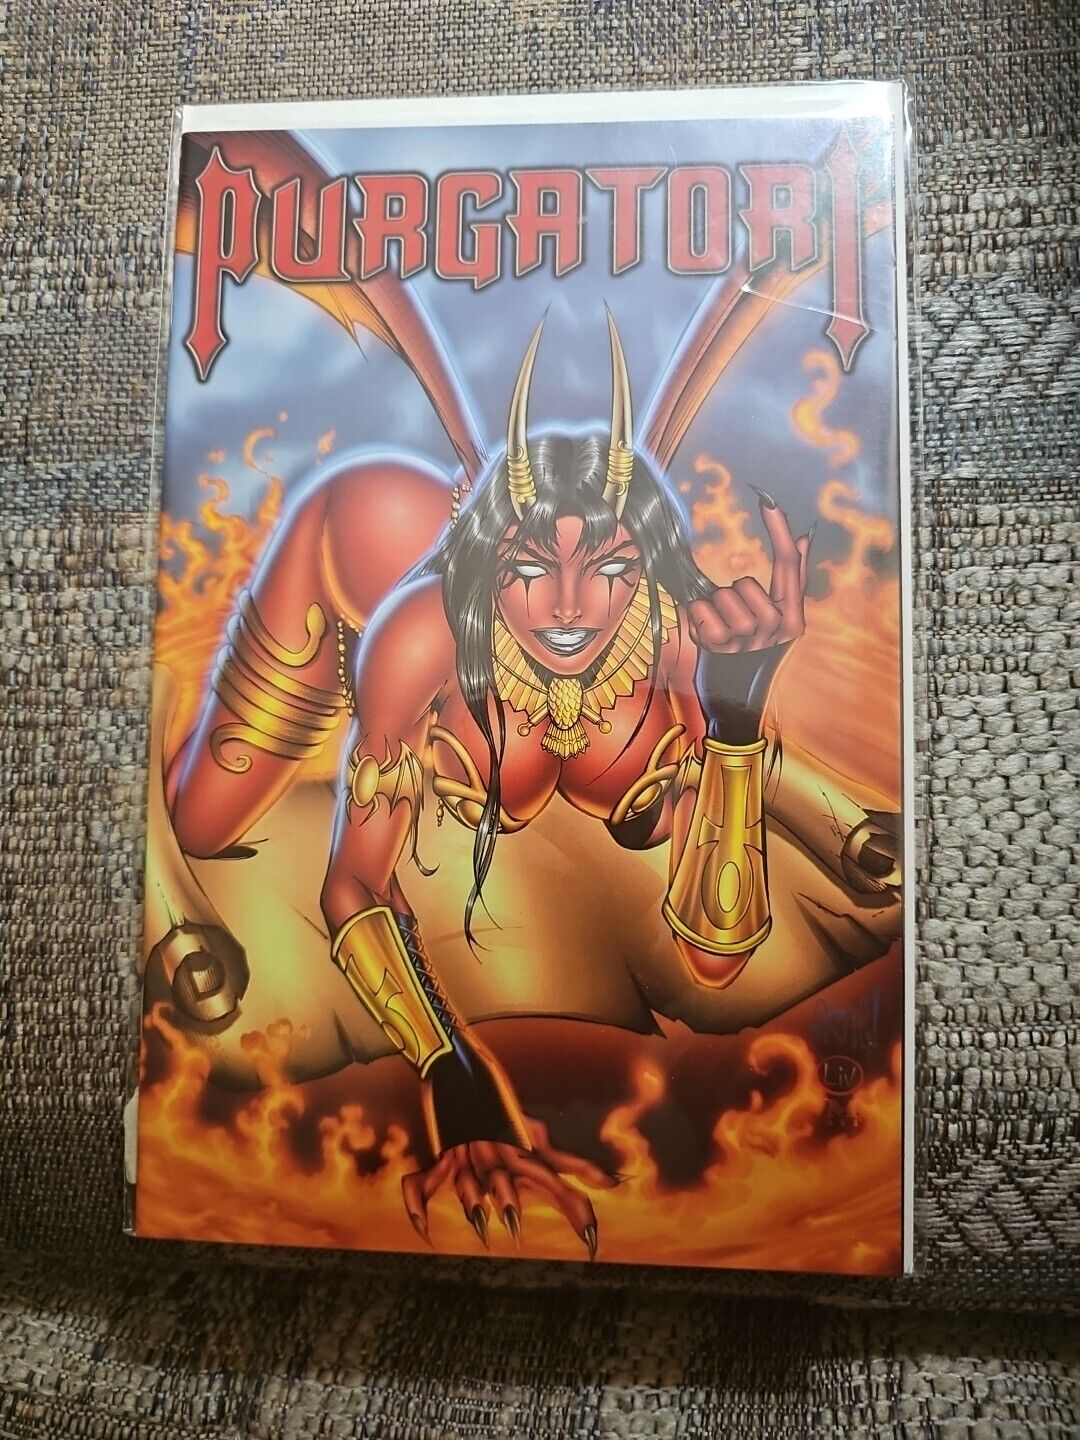 Purgatori Empire 1 DF Alt Cover Lim 504/2000, Chaos Comics